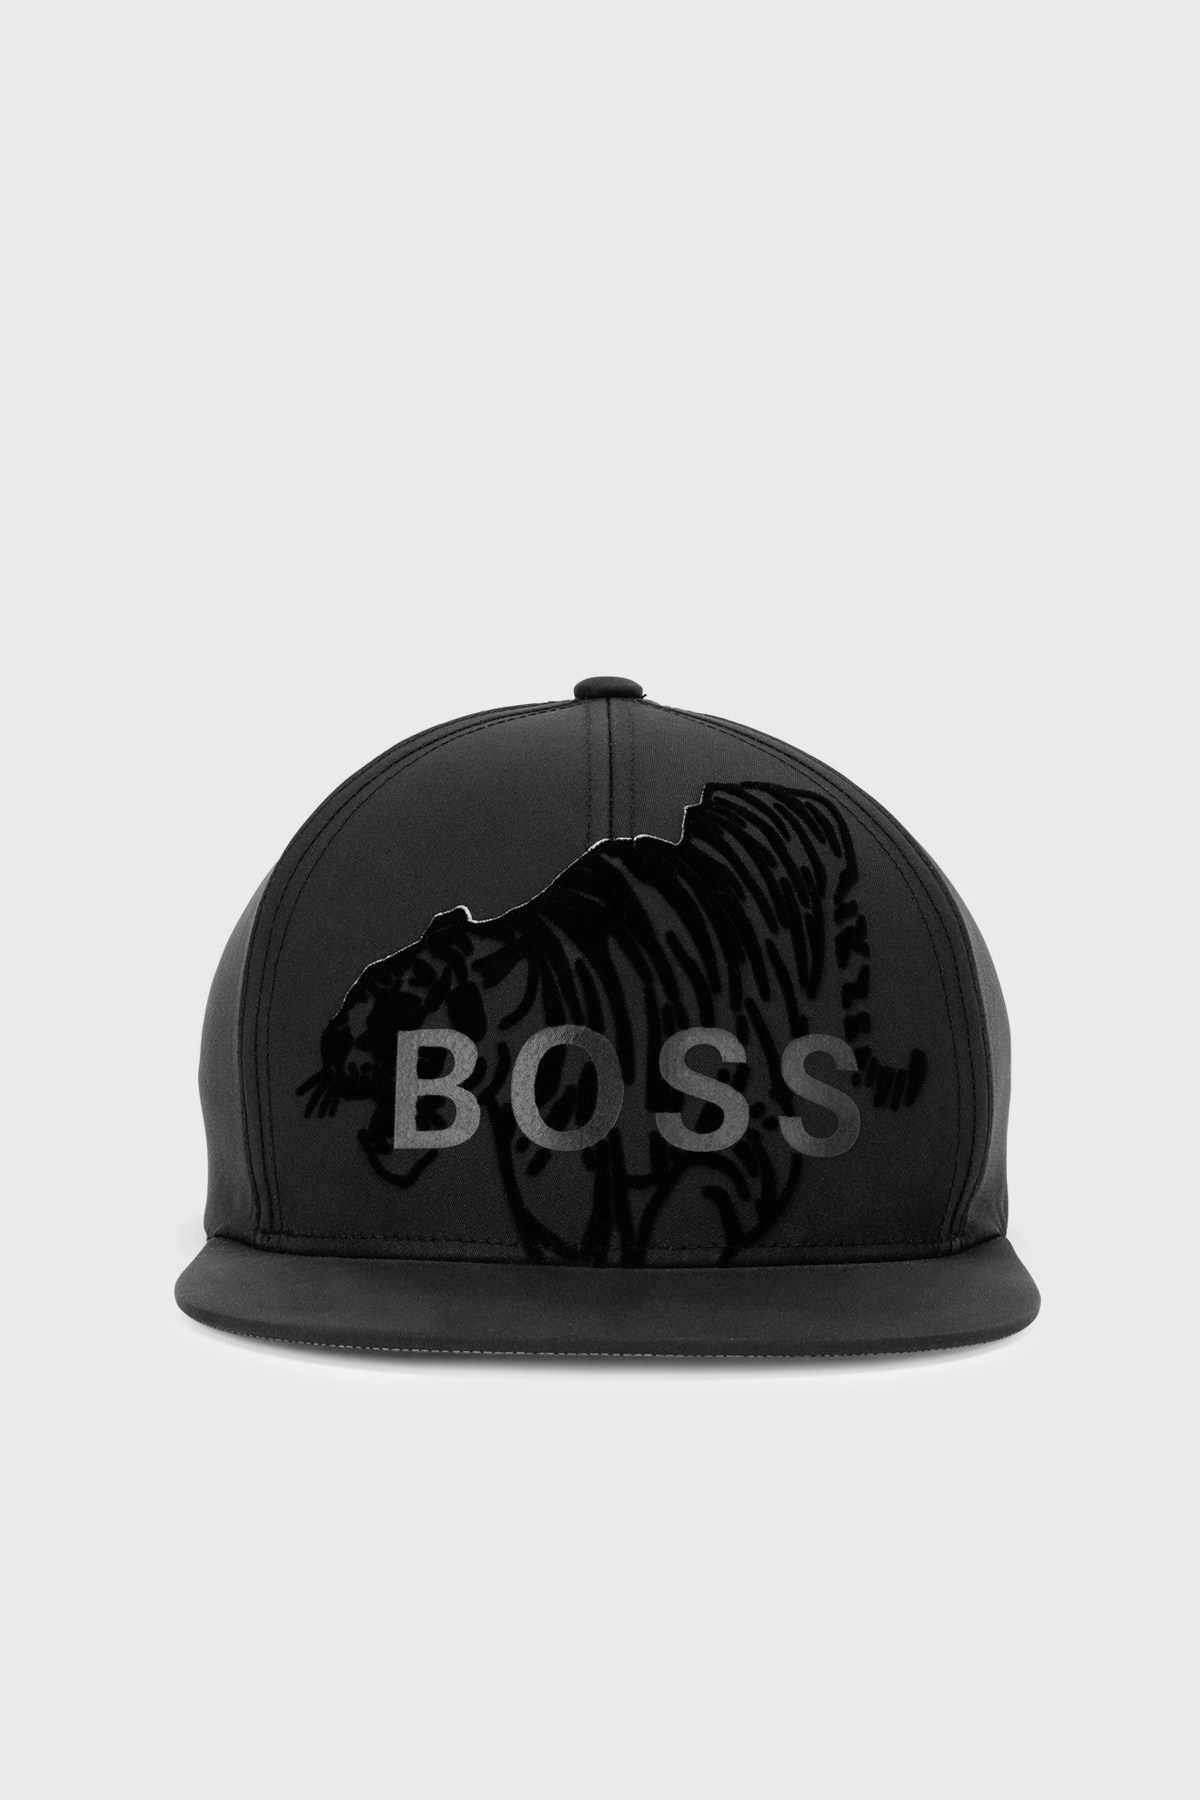 Boss Logo Detaylı Su Geçirmez Erkek Şapka 50461905 001 SİYAH